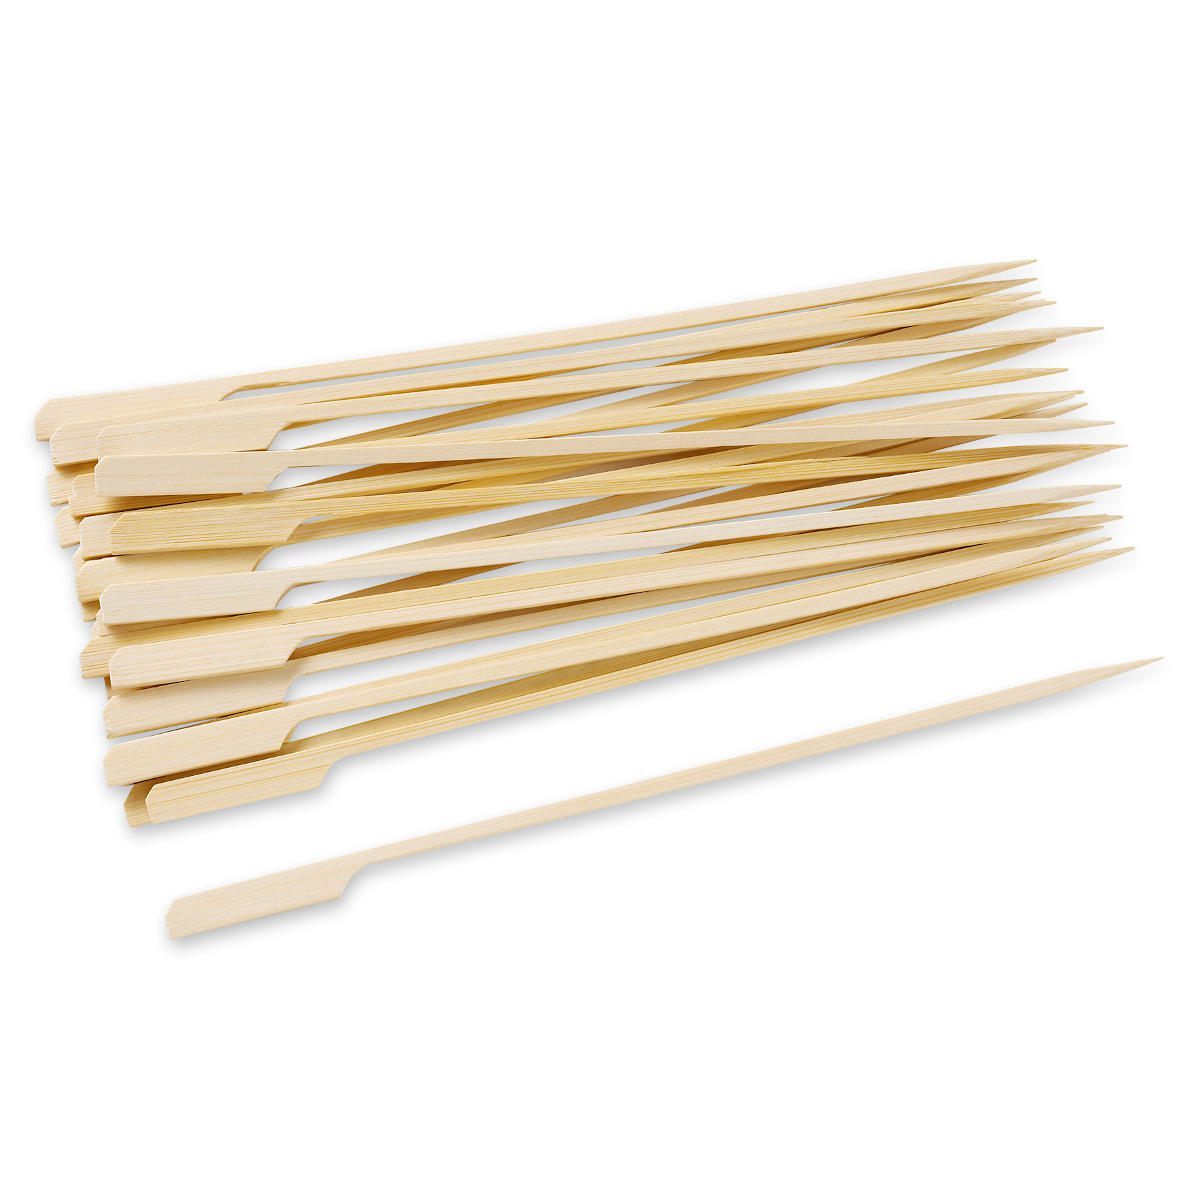 Weber Bambus Spieße (25 Stück)